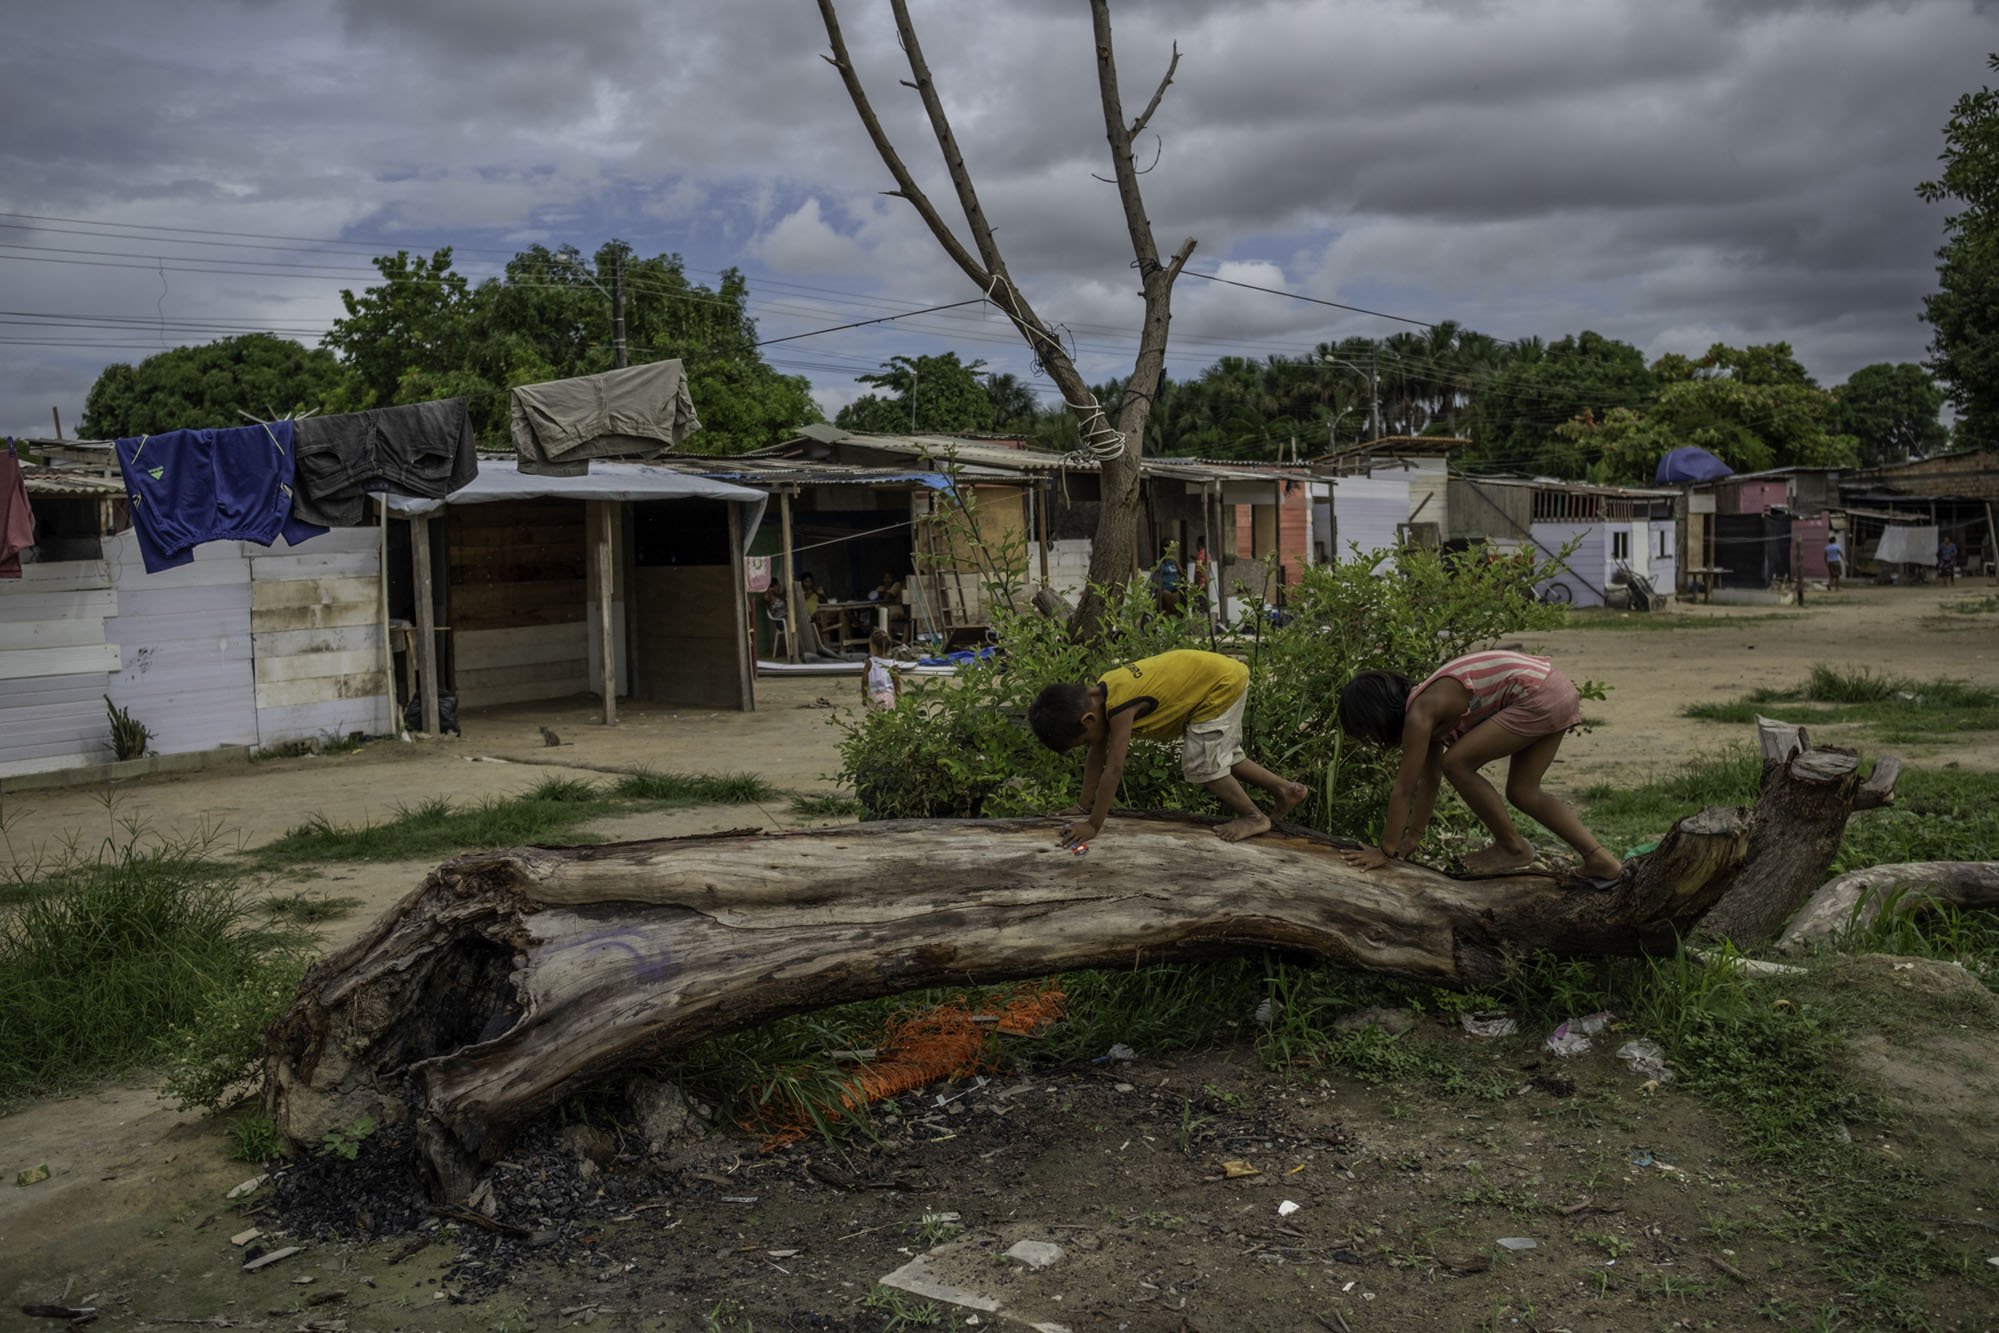 Dans le quartier de Ka´Ubanoko, des enfants jouent sur un tronc d'arbre mort. Derrière eux, des fils à linge et des logements de fortune.